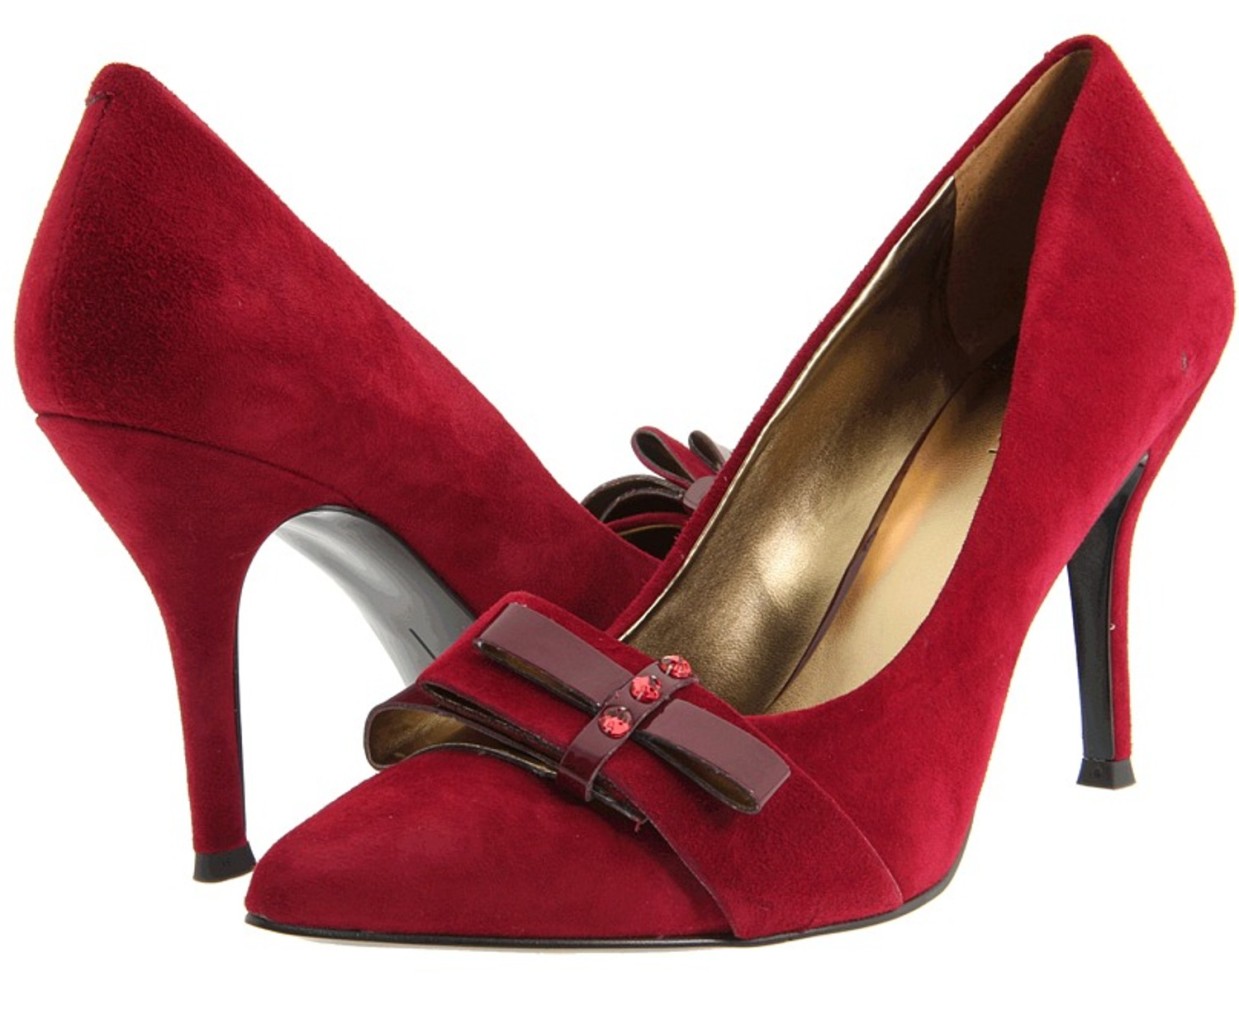 womens shoes nib nine west francess heels pumps wine red burgundy suede | eBay